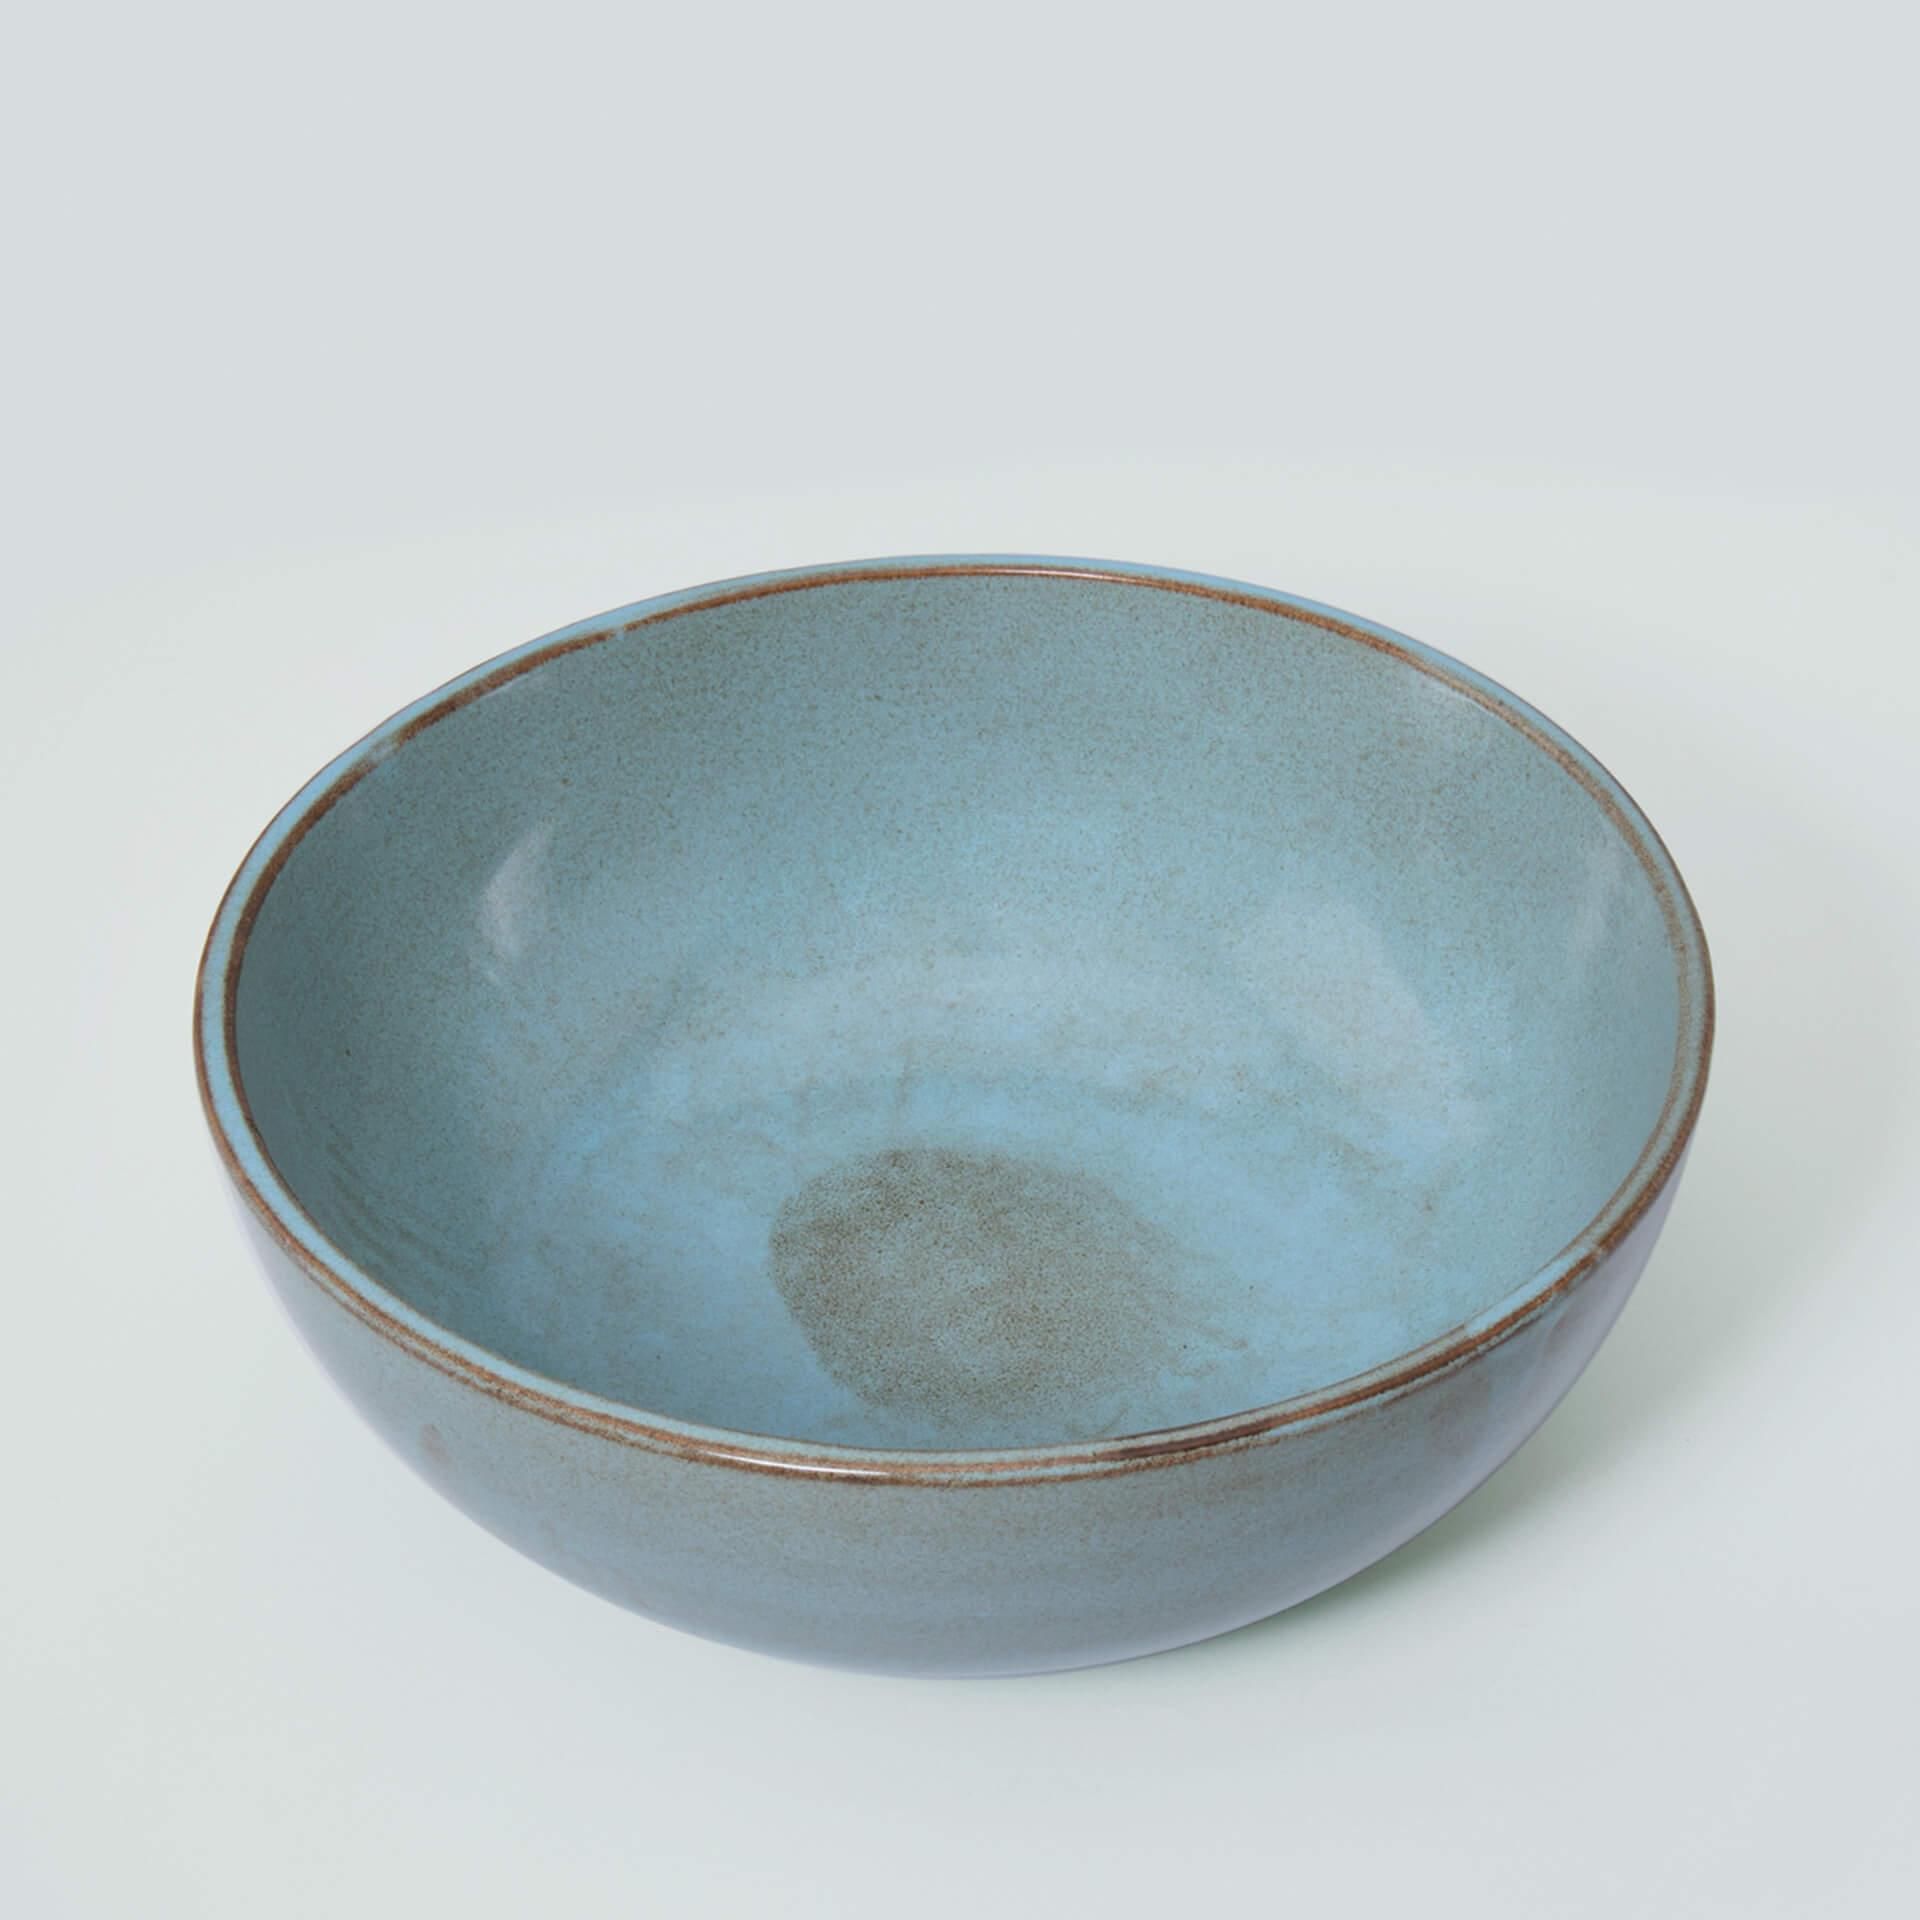 aqua rustic ceramic serving bowl- large